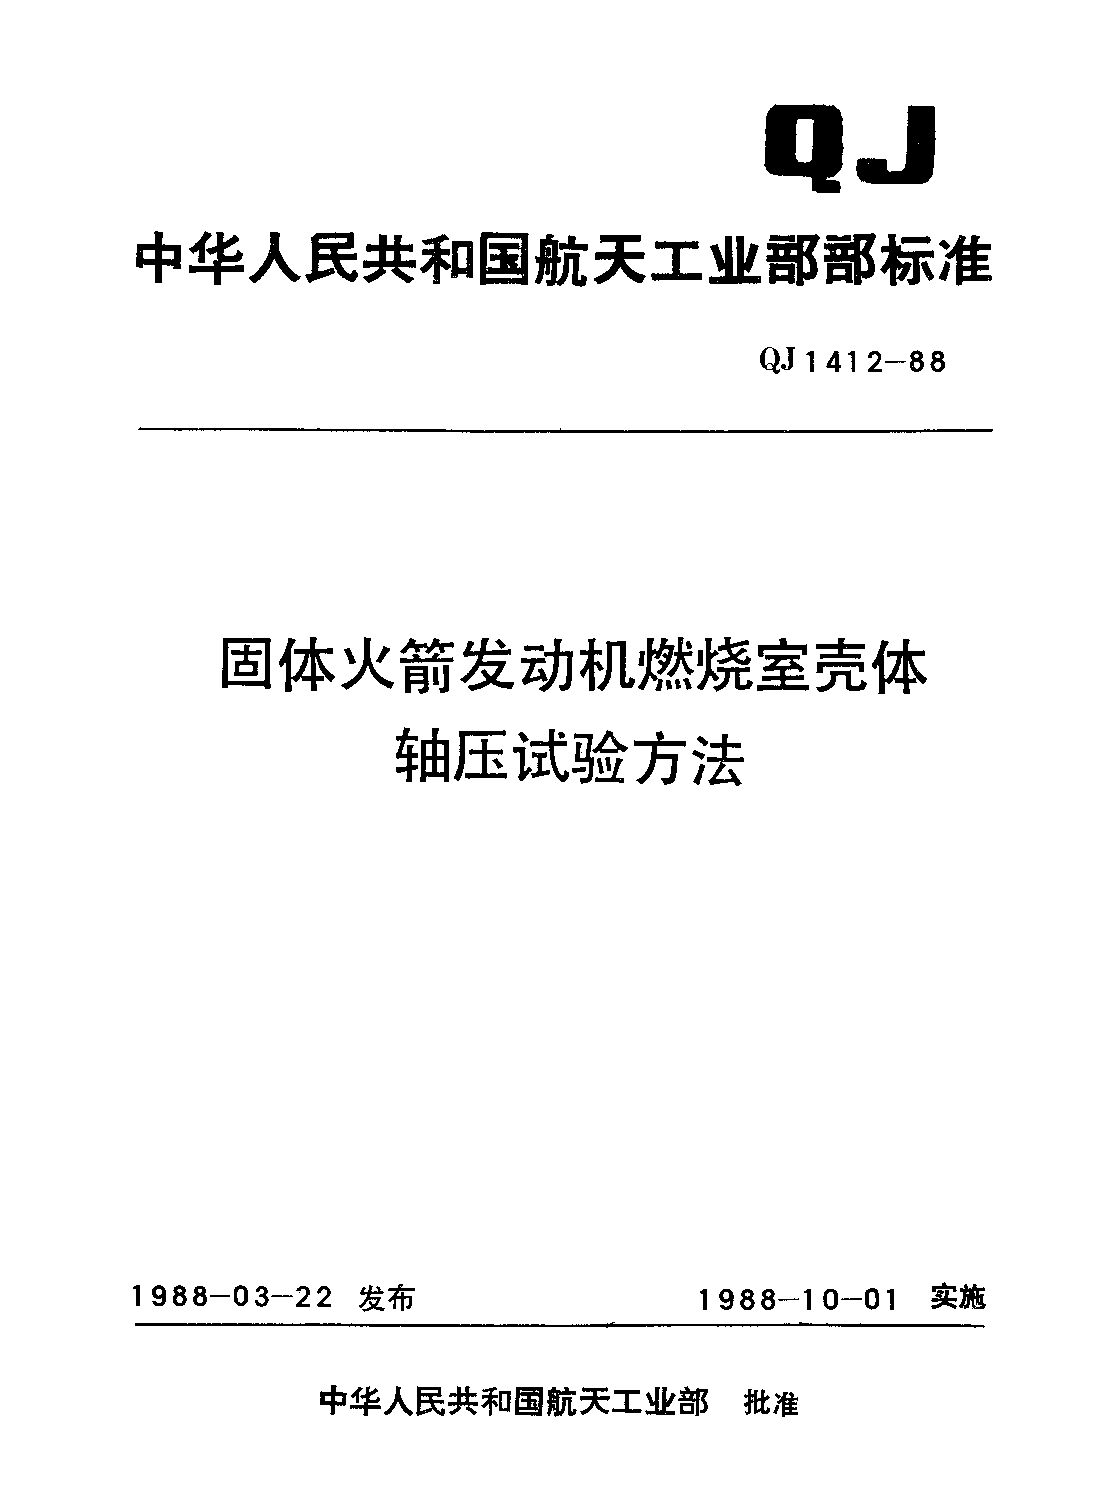 QJ 1412-1988封面图